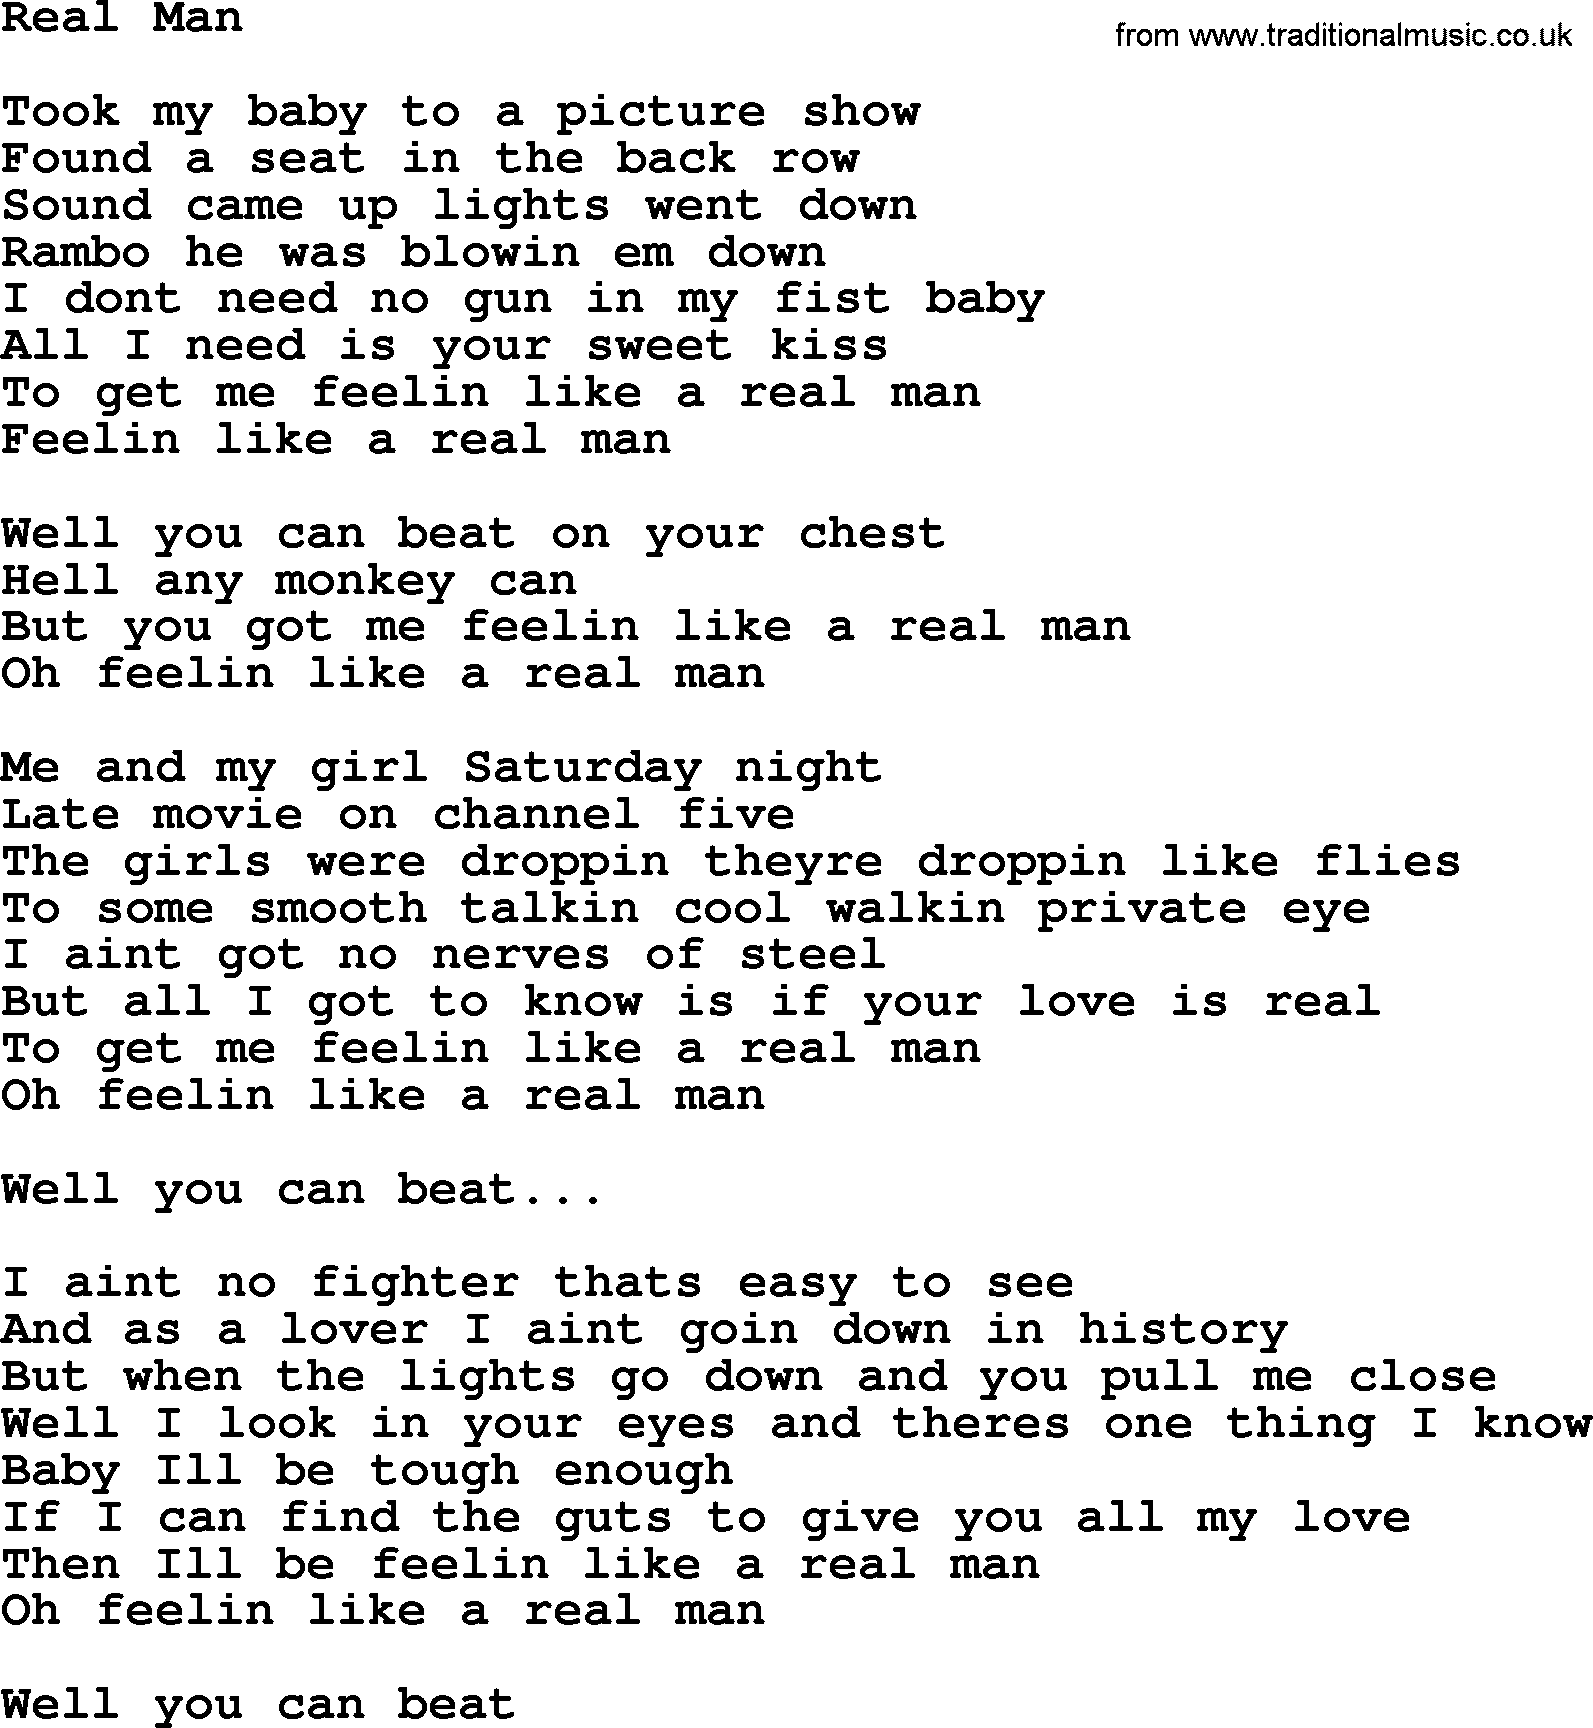 Bruce Springsteen song: Real Man lyrics